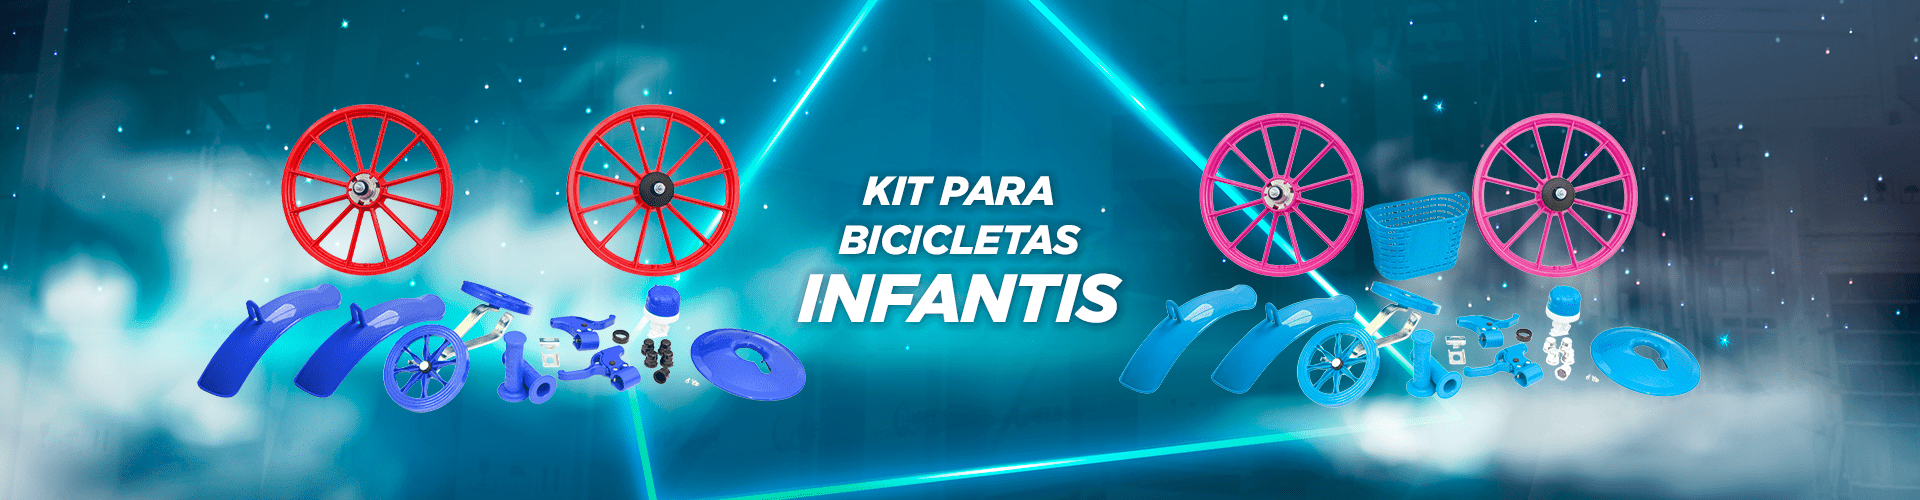 Kit para Bicicletas Infantis